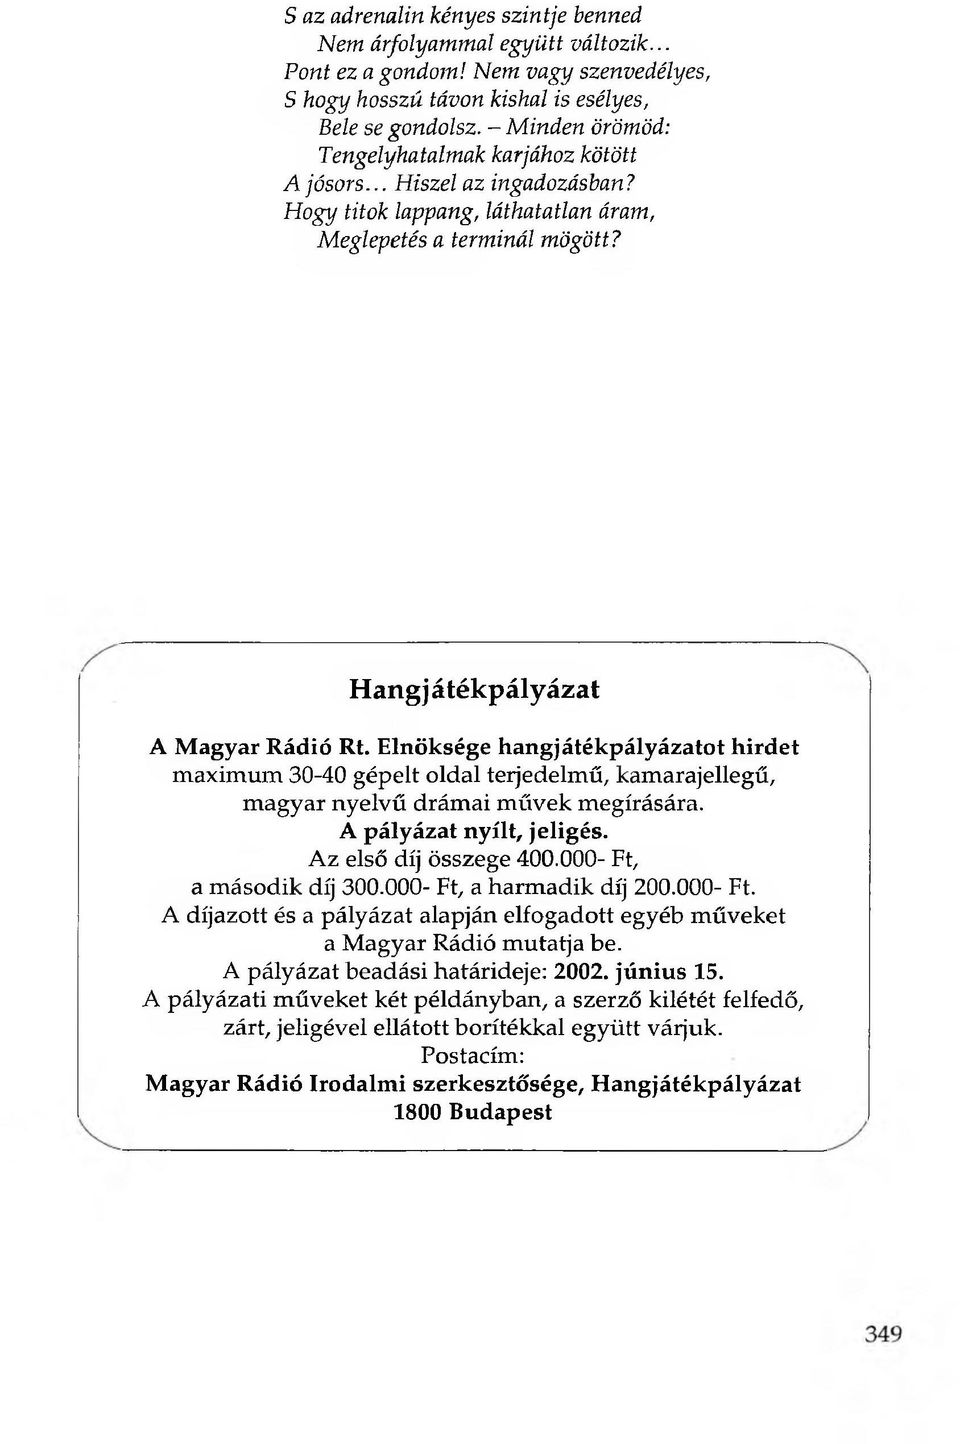 Elnöksége hangjátékpályázatot hirdet maximum 30-40 gépelt oldal terjedelmű, kamarajellegű, magyar nyelvű drámai művek megírására. A pályázat nyílt, jeligés. Az első díj összege 400.